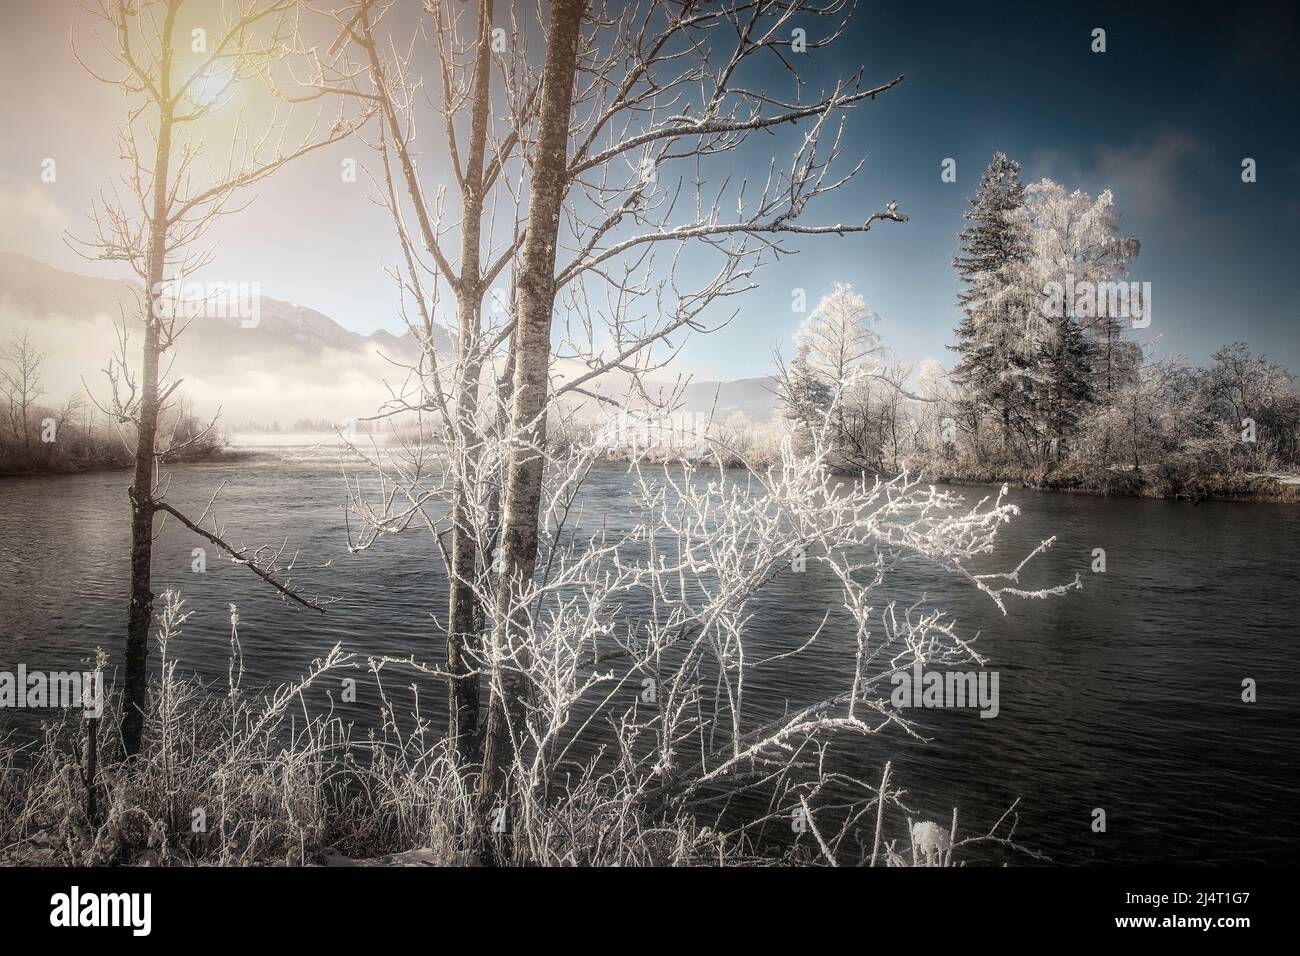 ARTE FOTOGRÁFICO: Escena invernal en Kochel que representa el río Loisach que fluye desde el lago Kochelsee, Oberbayern, Alemania Foto de stock